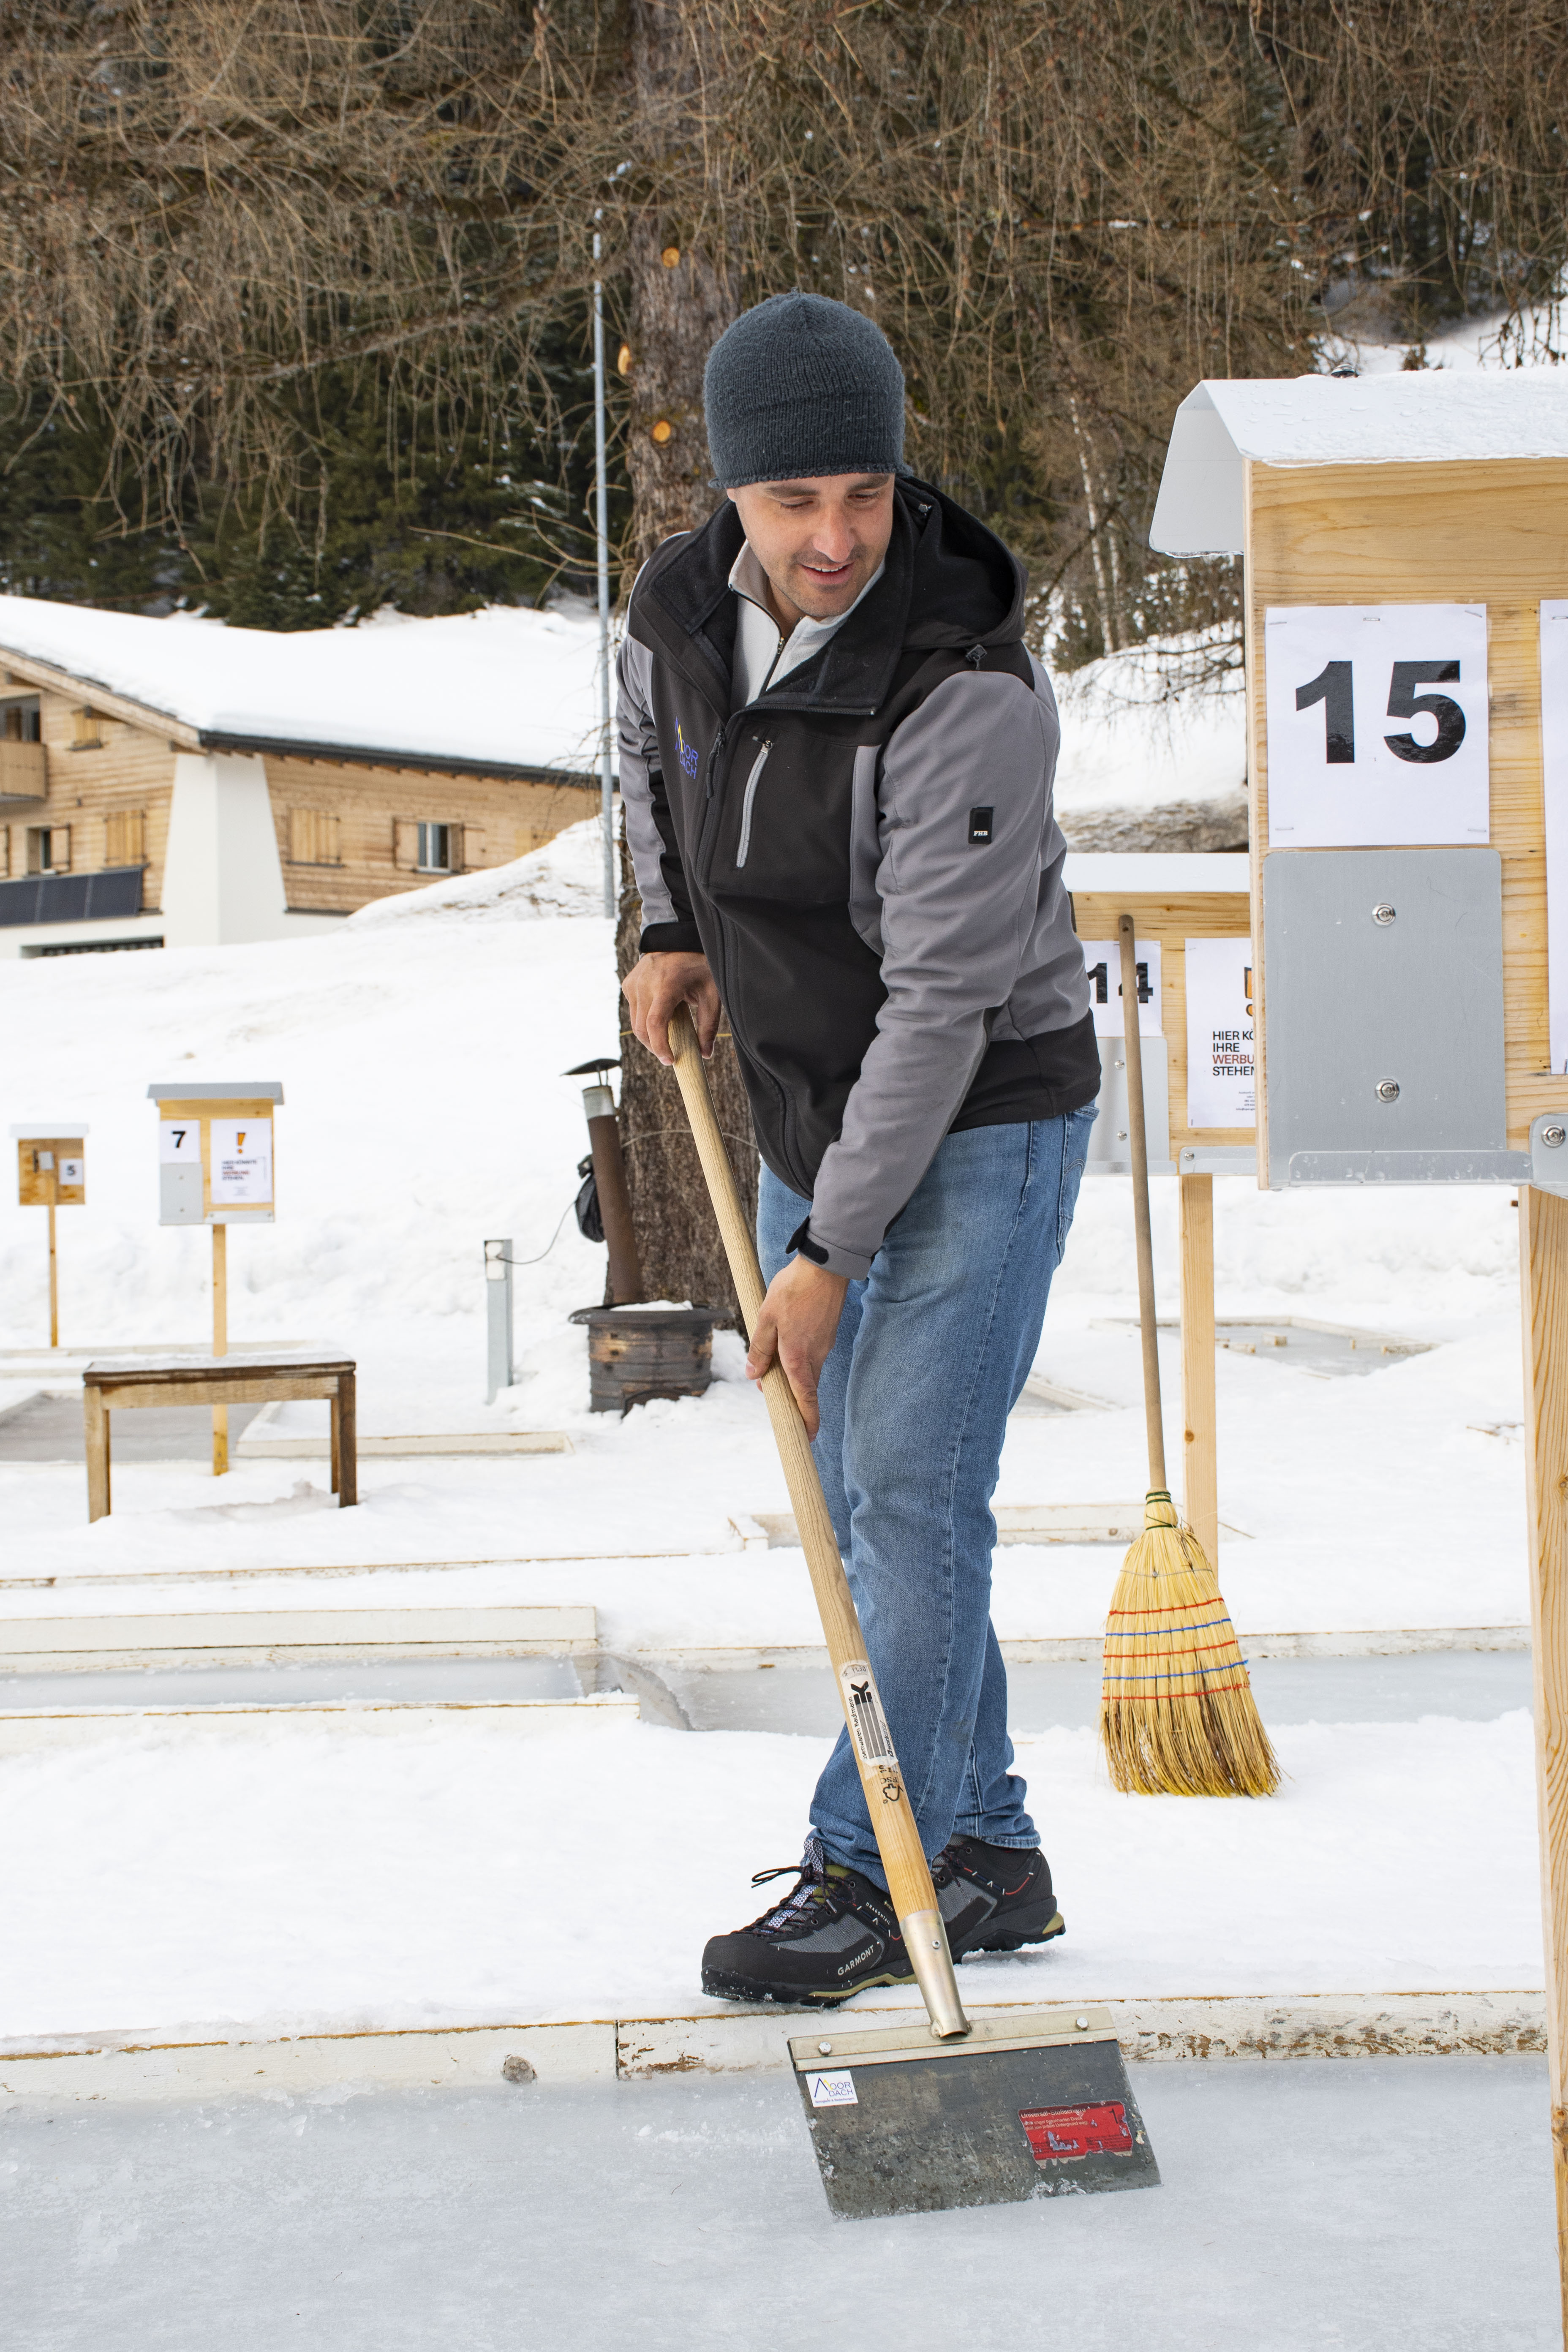 Weder Eishockey noch Minigolf: Diego Moor hat das Eis-Minigolf erfunden und in Davos realisiert.